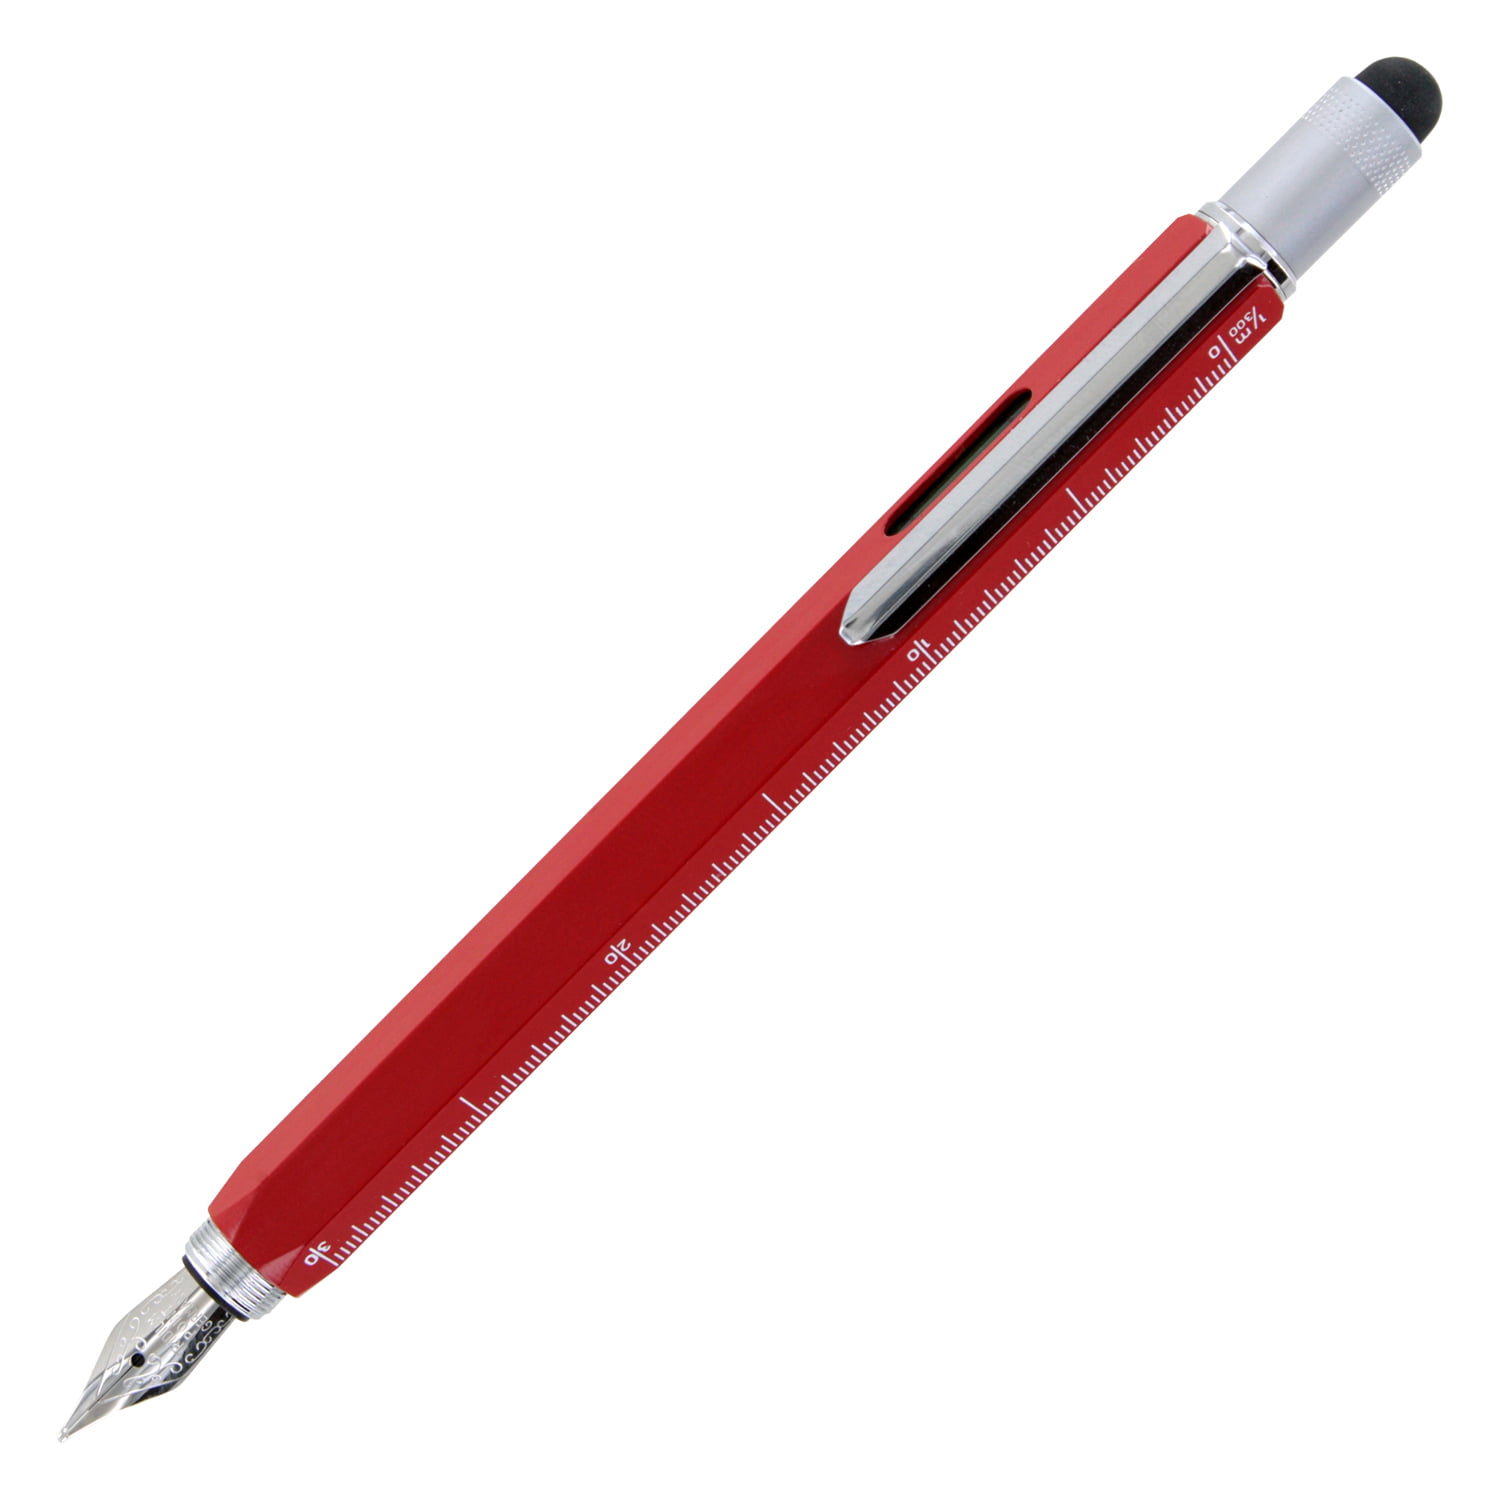 Monteverde Tool Pen One Touch Stylus 9-Function Ballpoint Pen New Black 